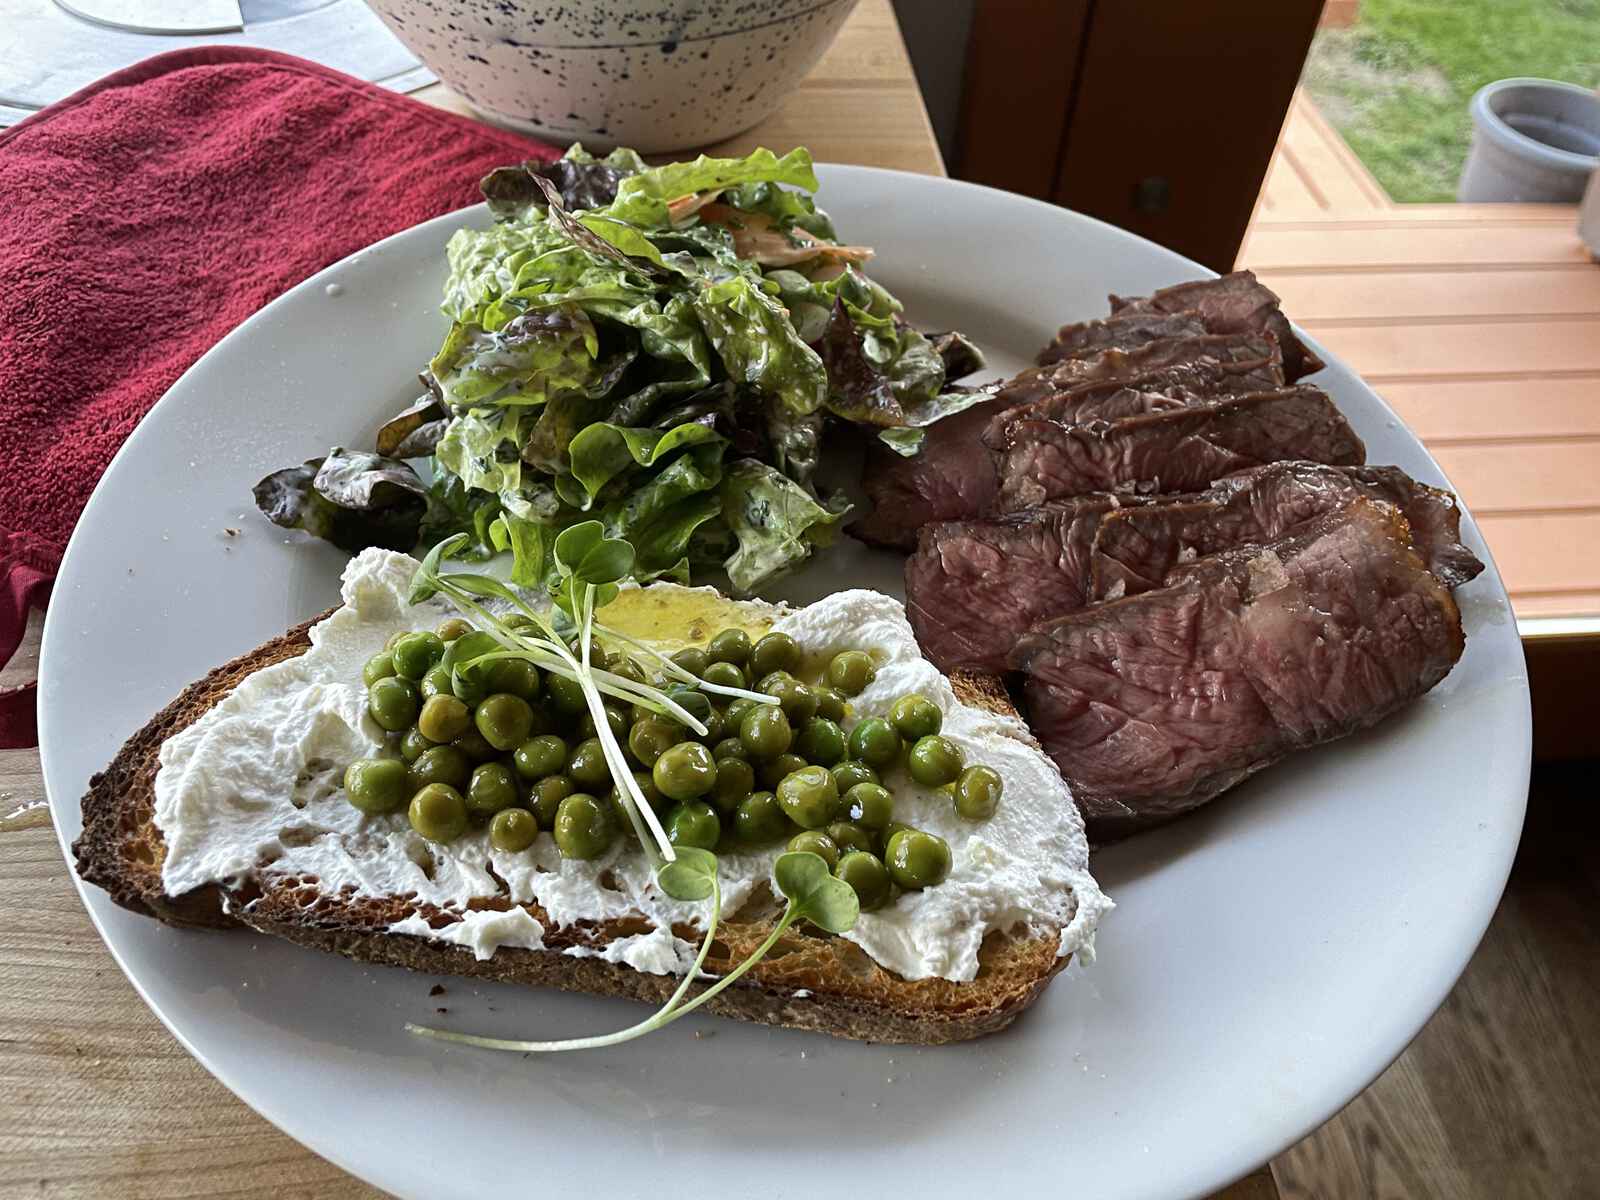 Steak, salad and toast on a plate